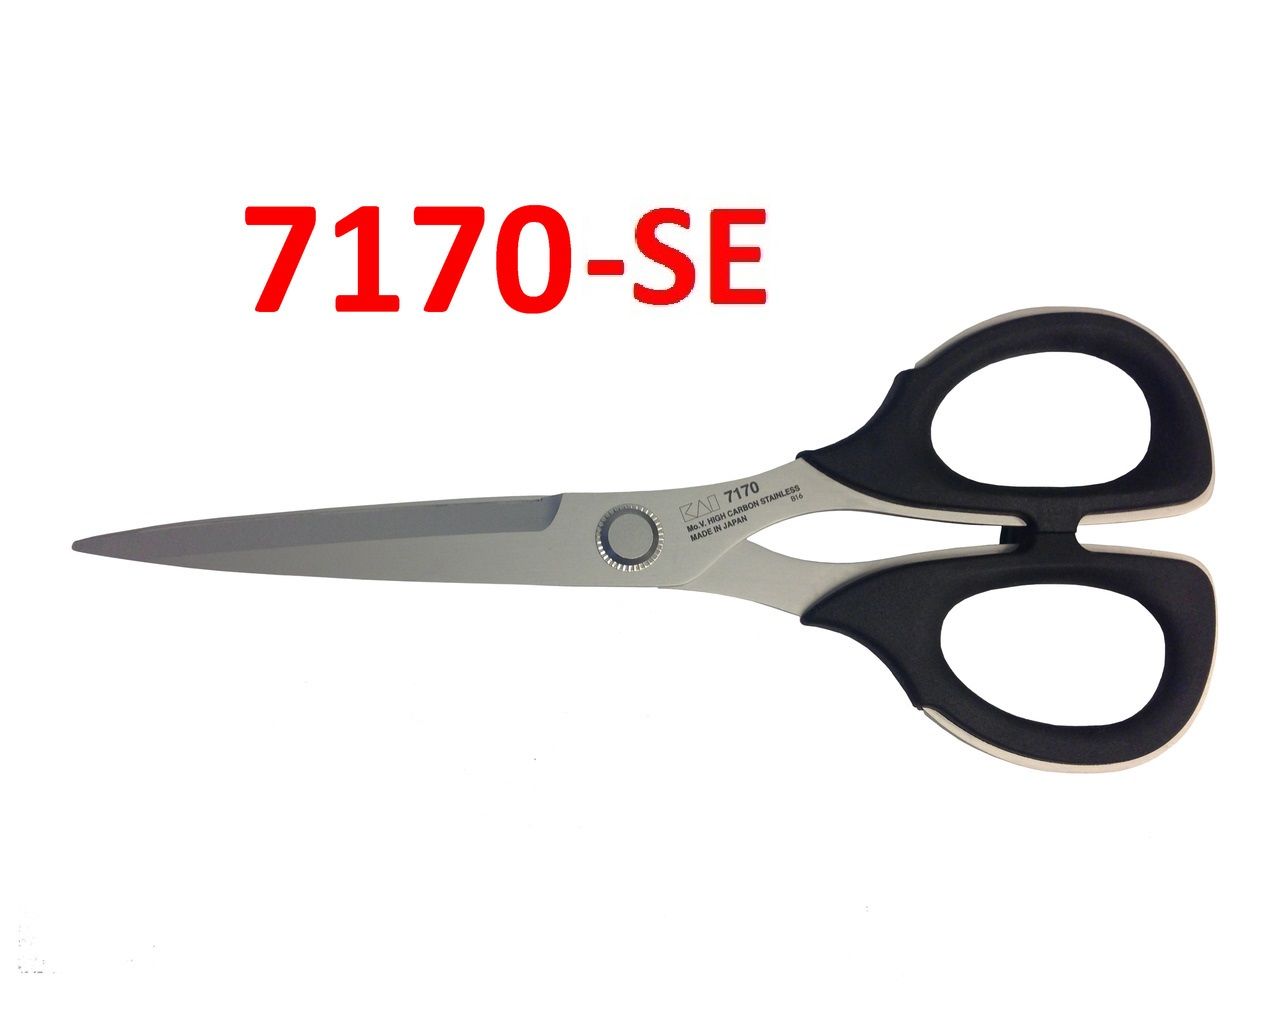 Serrated Trimming Scissors